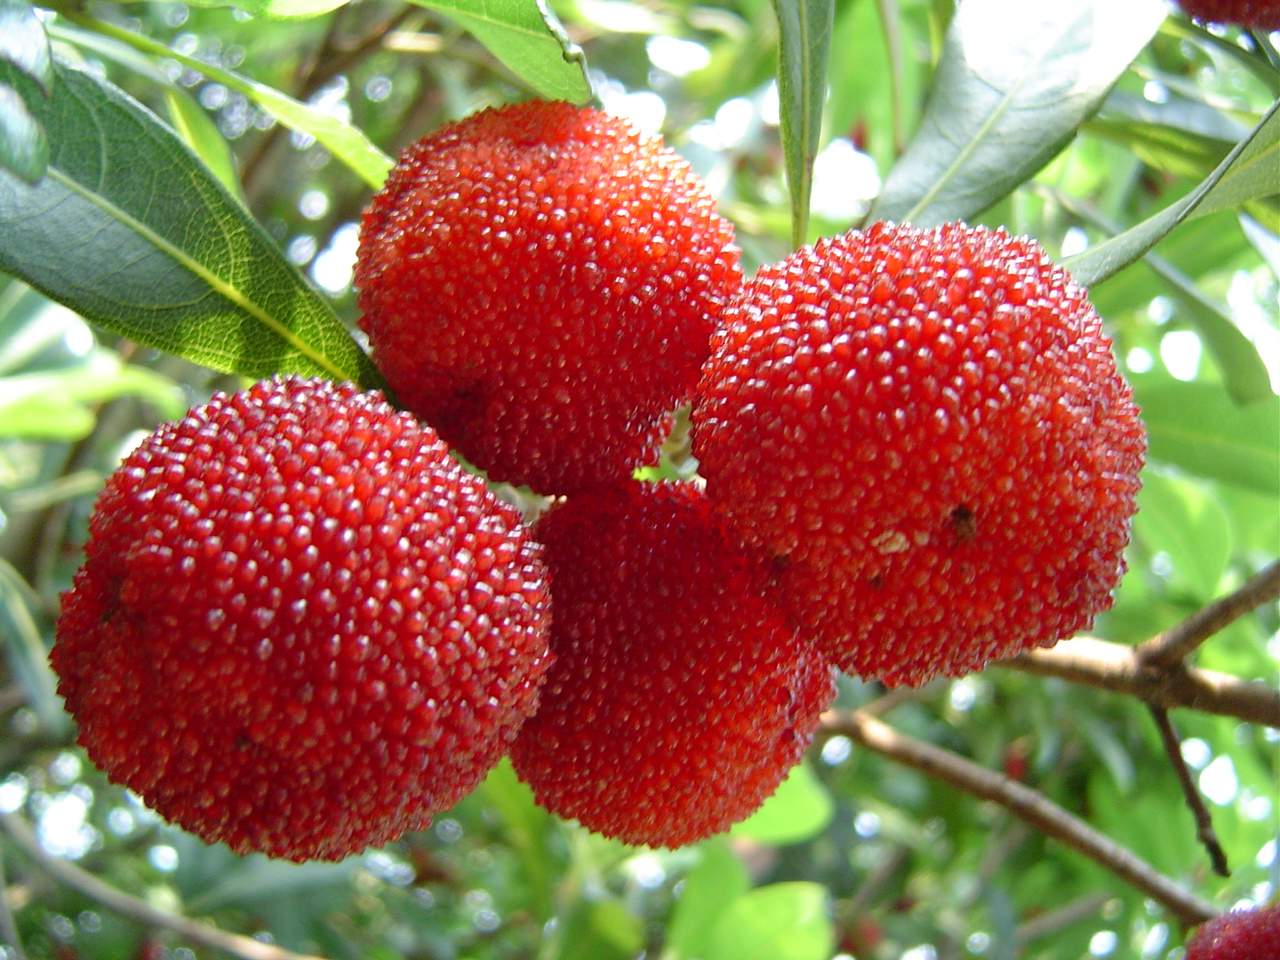 میوه خوشمزه یانگ می با نام های توت فرنگی چینی یک میوه خوشمزه با طعم لذیذ و دلچسب می باشد